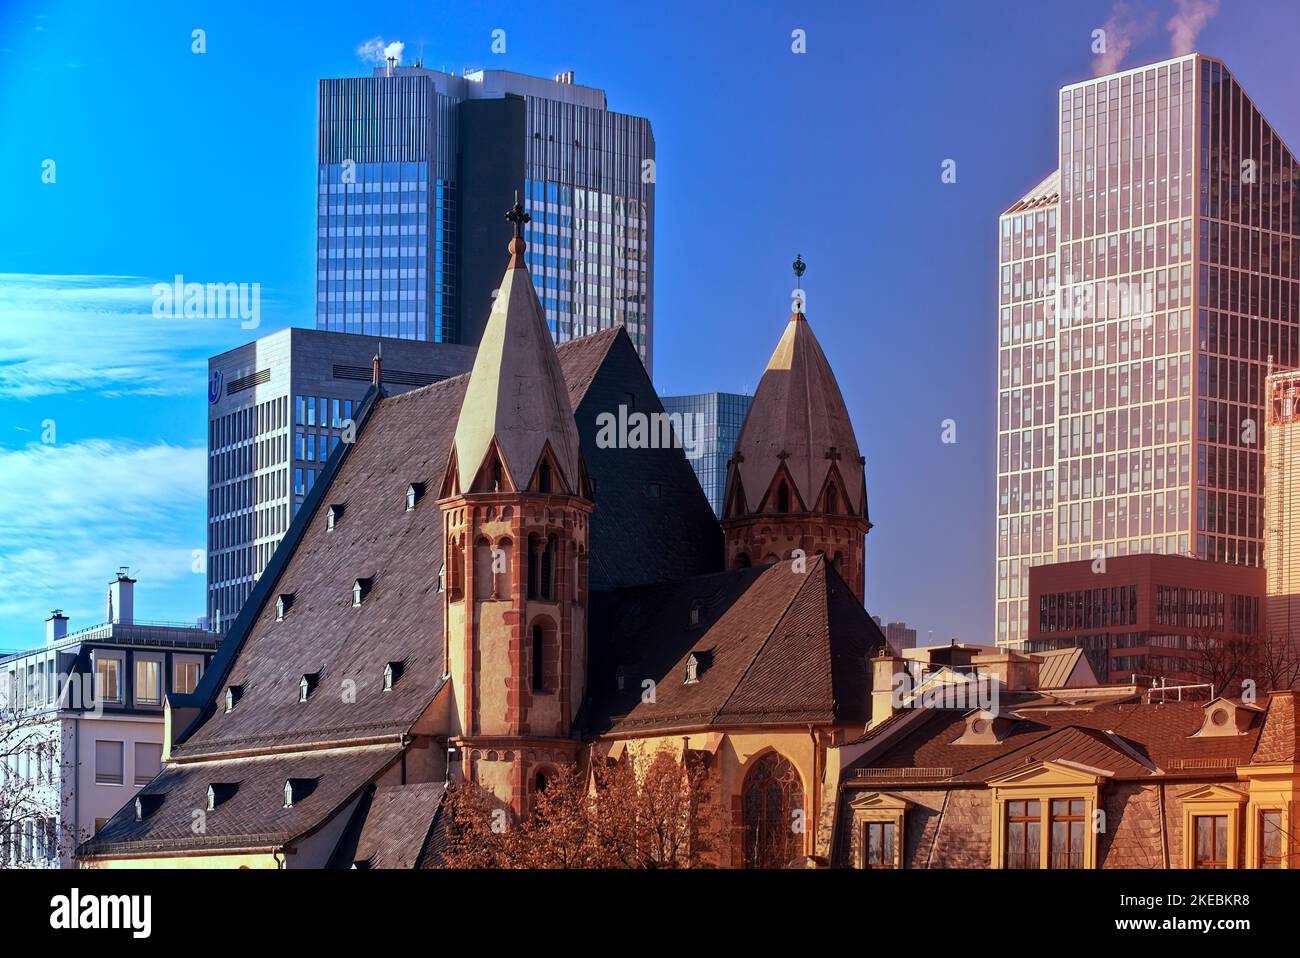 Francoforte, Germania, 30 dicembre 2019: Una chiesa medievale e le moderne torri di vetro del quartiere bancario sono in forte contrasto a Francoforte Foto Stock